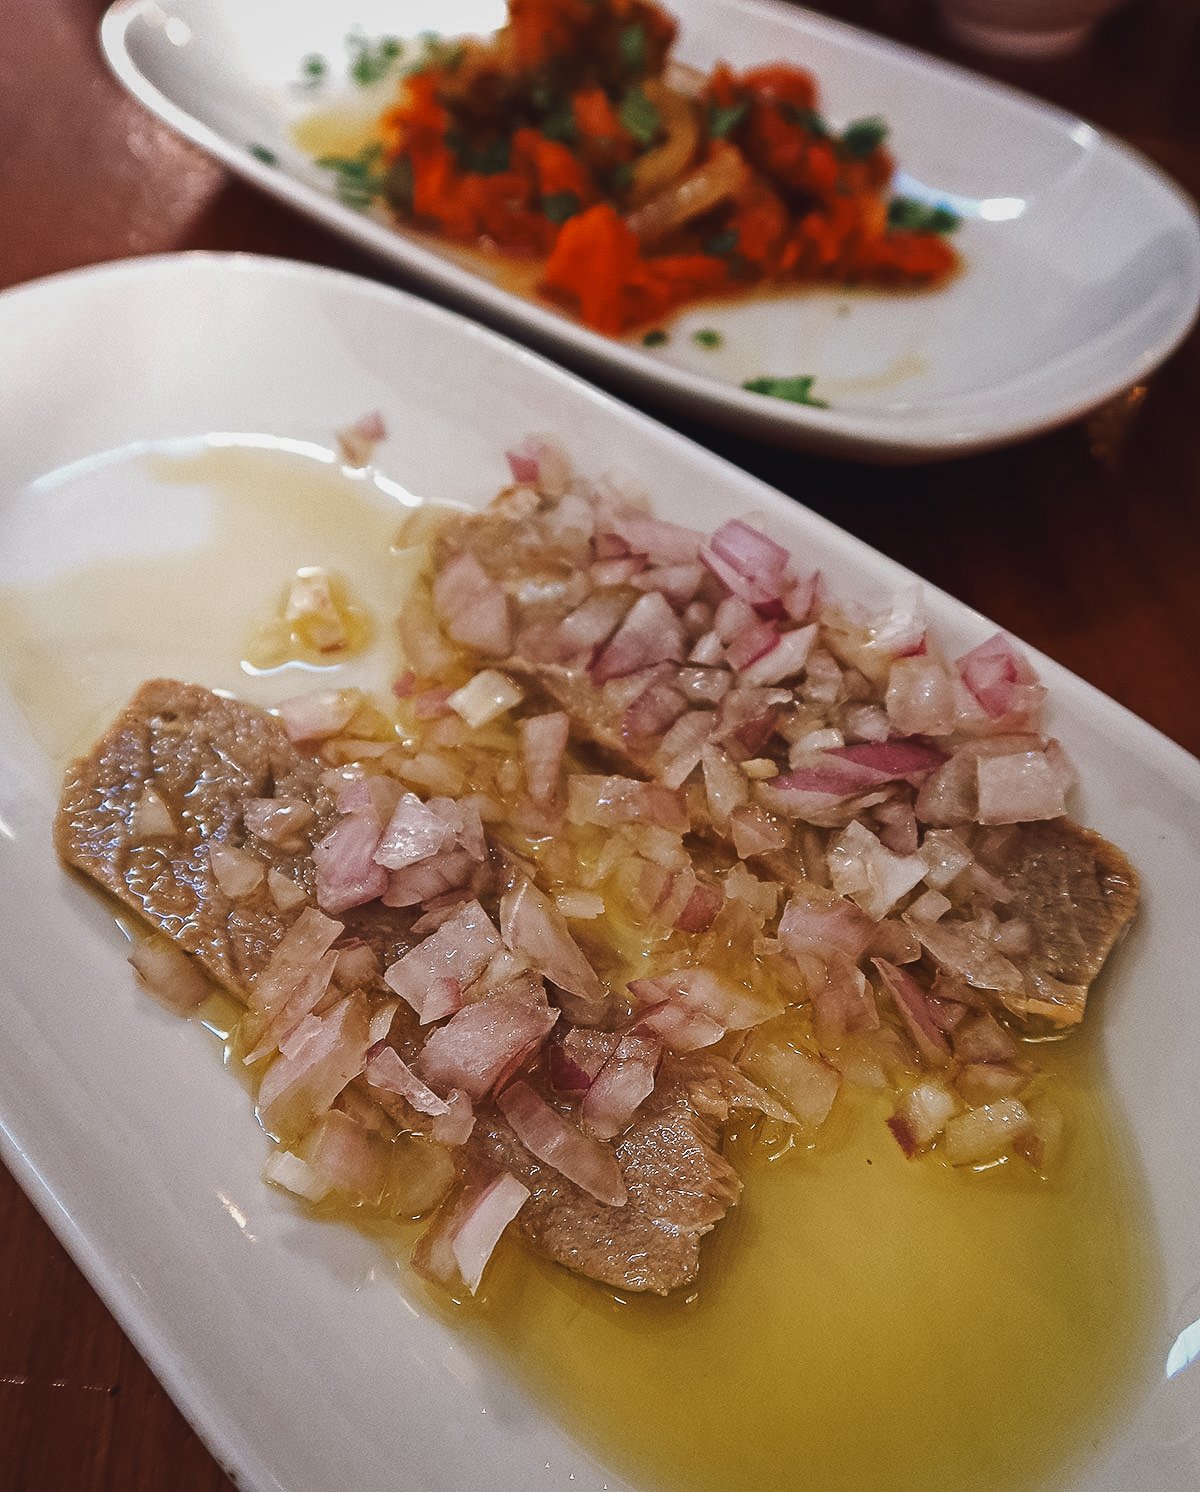 Tuna tapas dish at a restaurant in Malaga